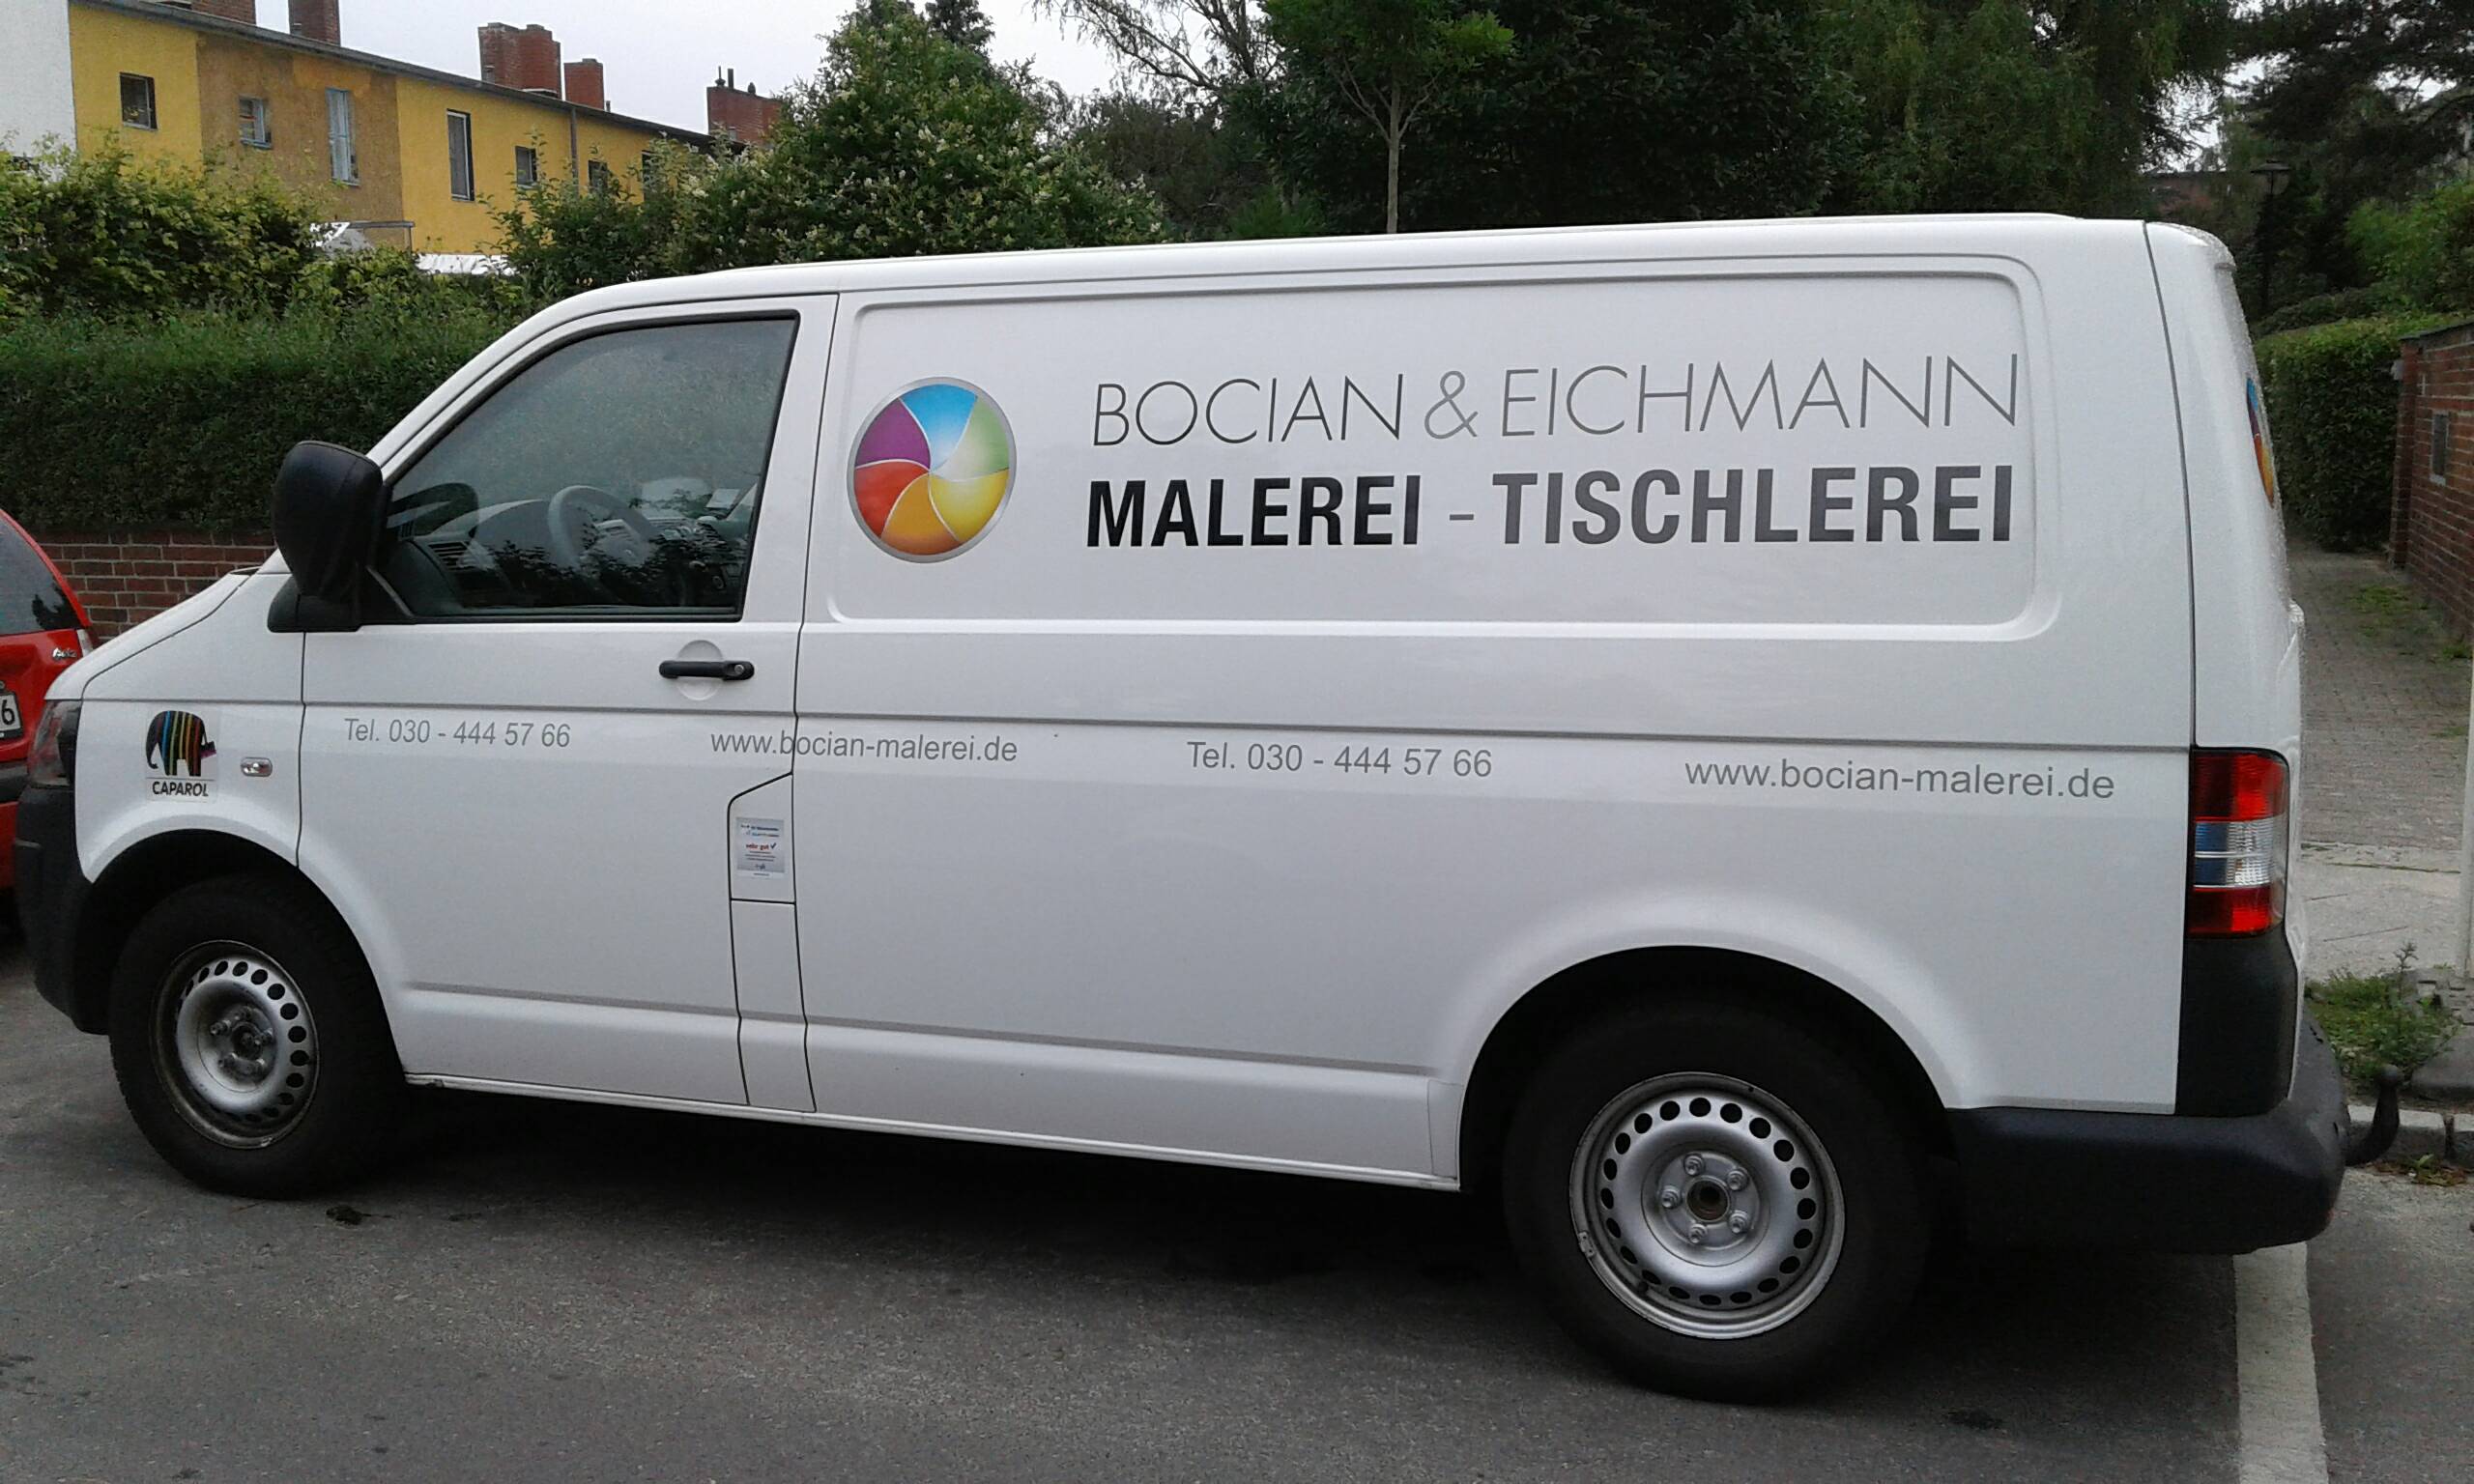 Bild 1 Bocian & Eichmann Malerei-Tischlerei GmbH in Berlin